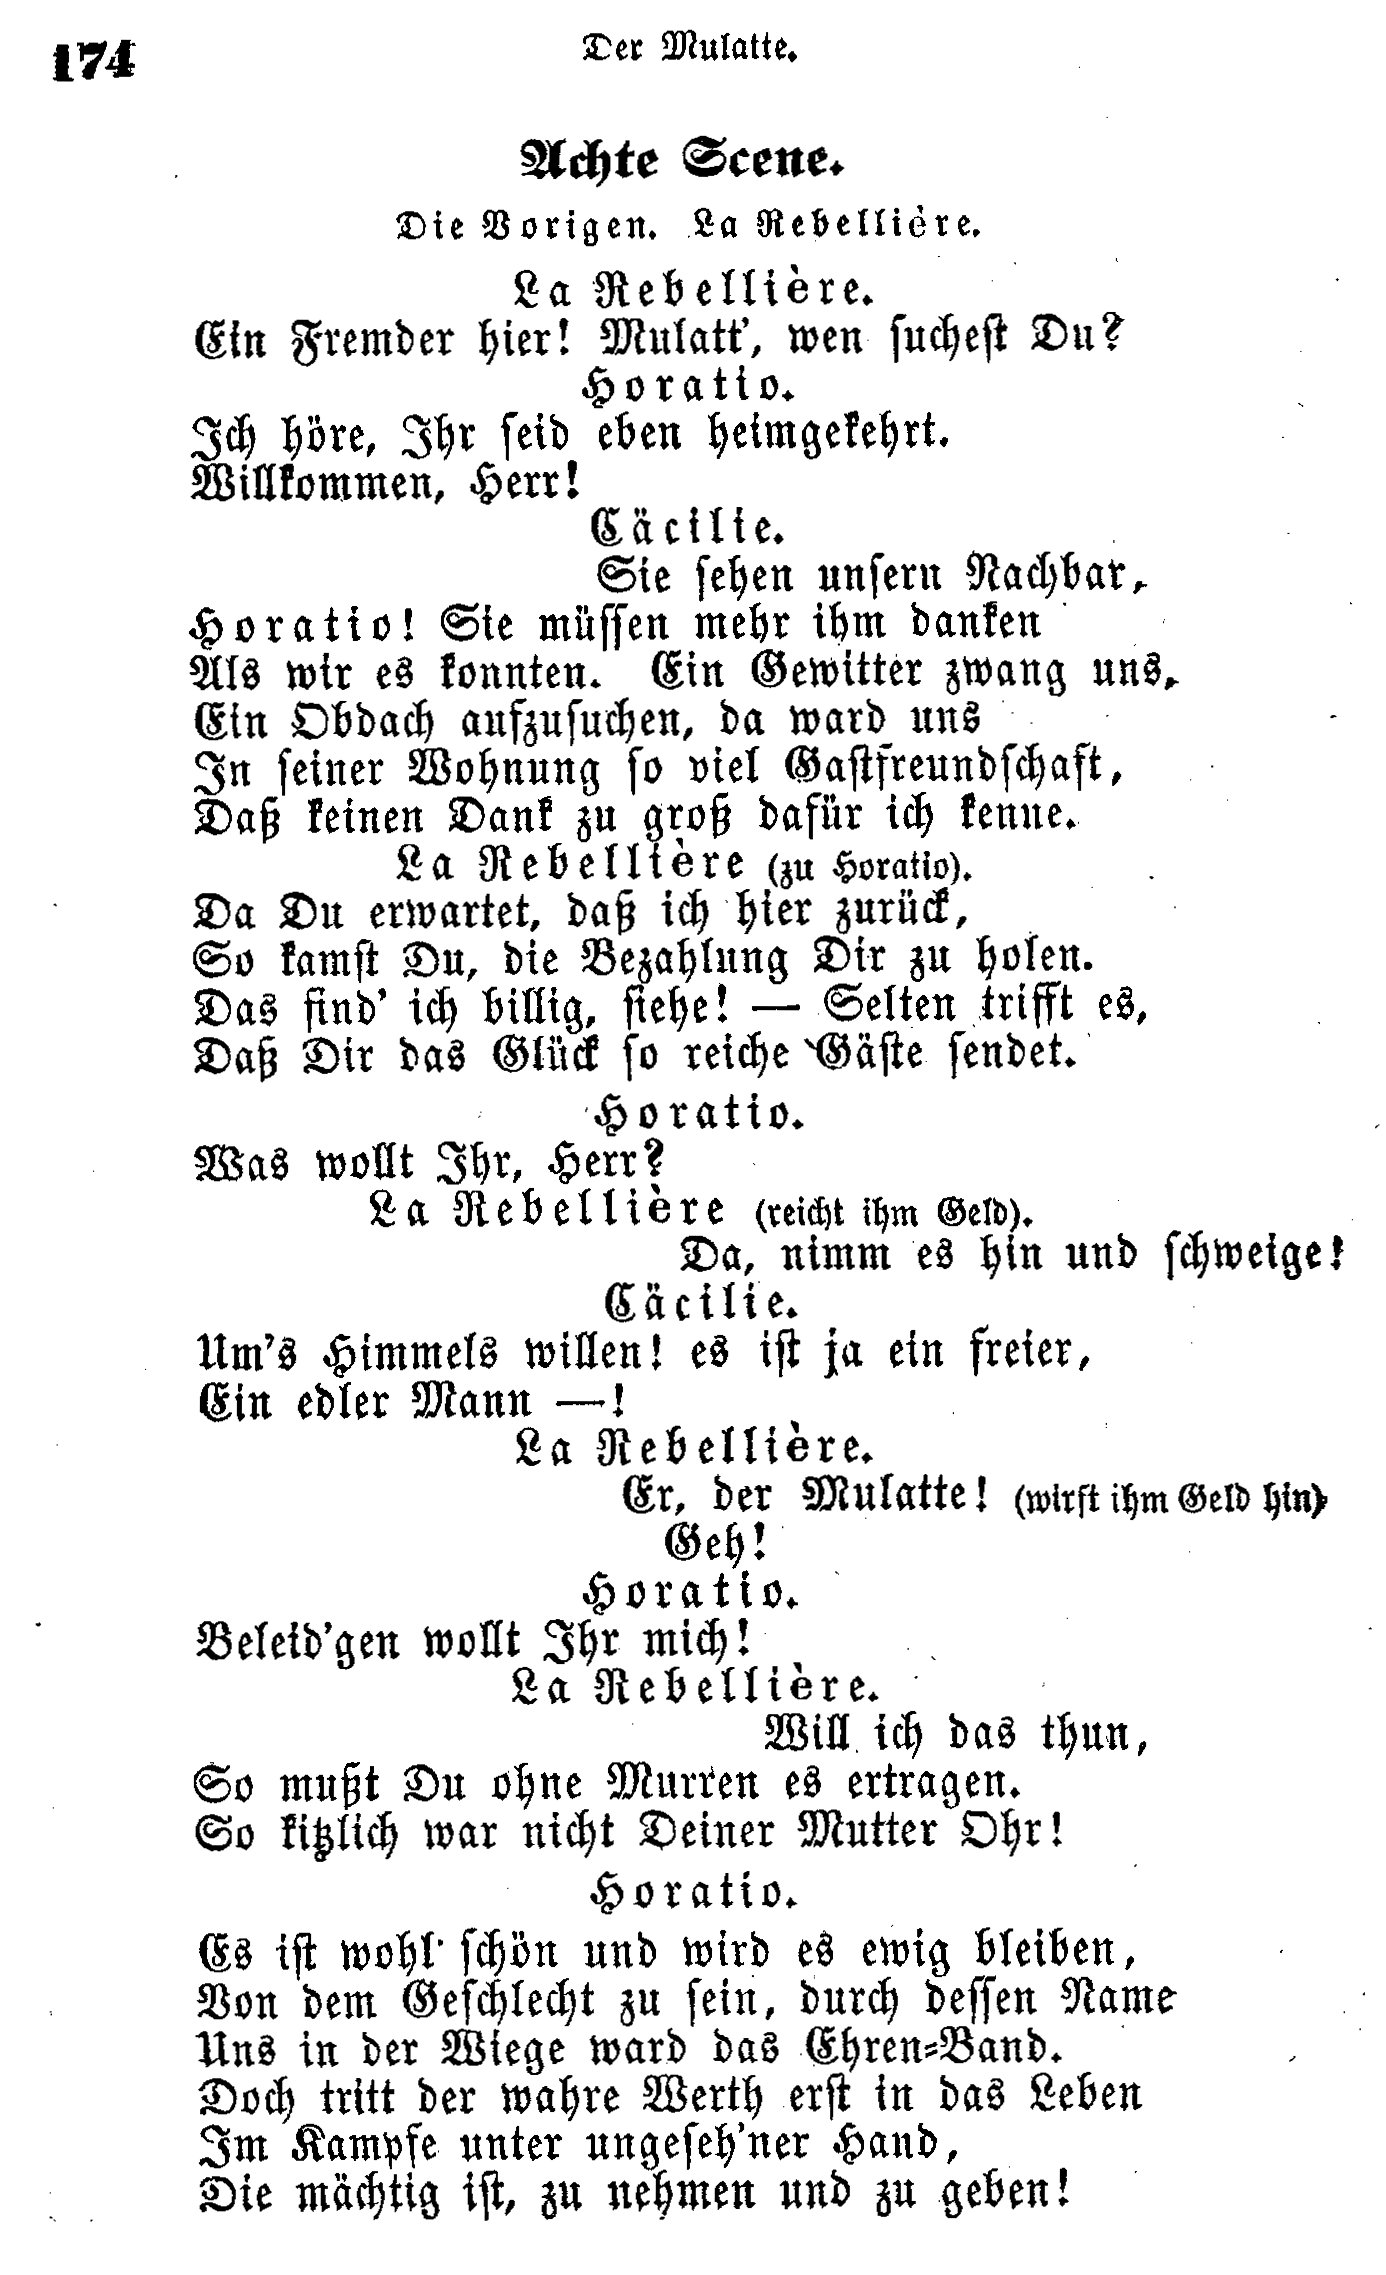 H.C. Andersen: Der Mulatte page  174